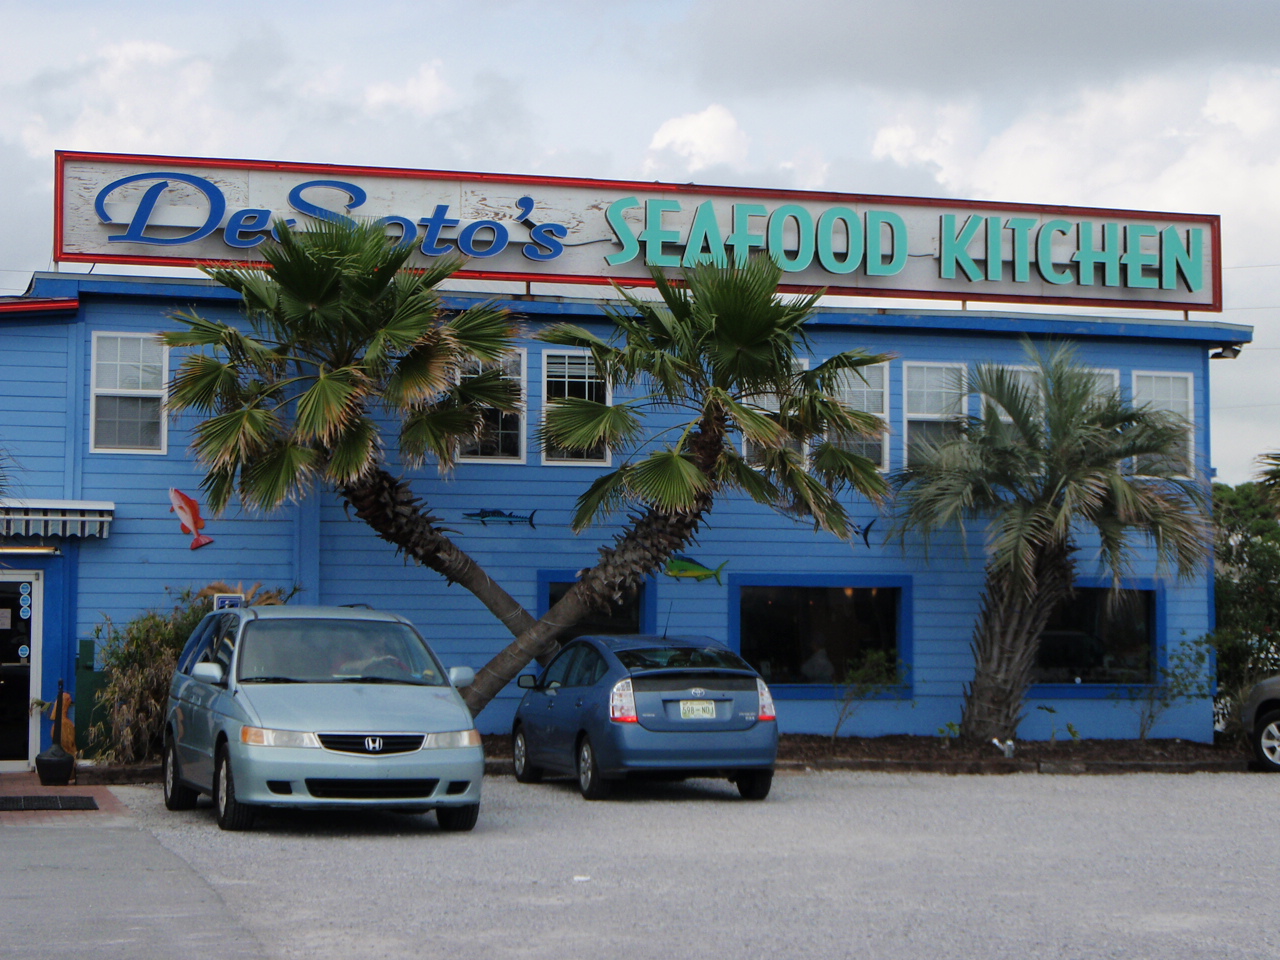 WhereWeGoUGo2: Gulf Shores and area Restaurants